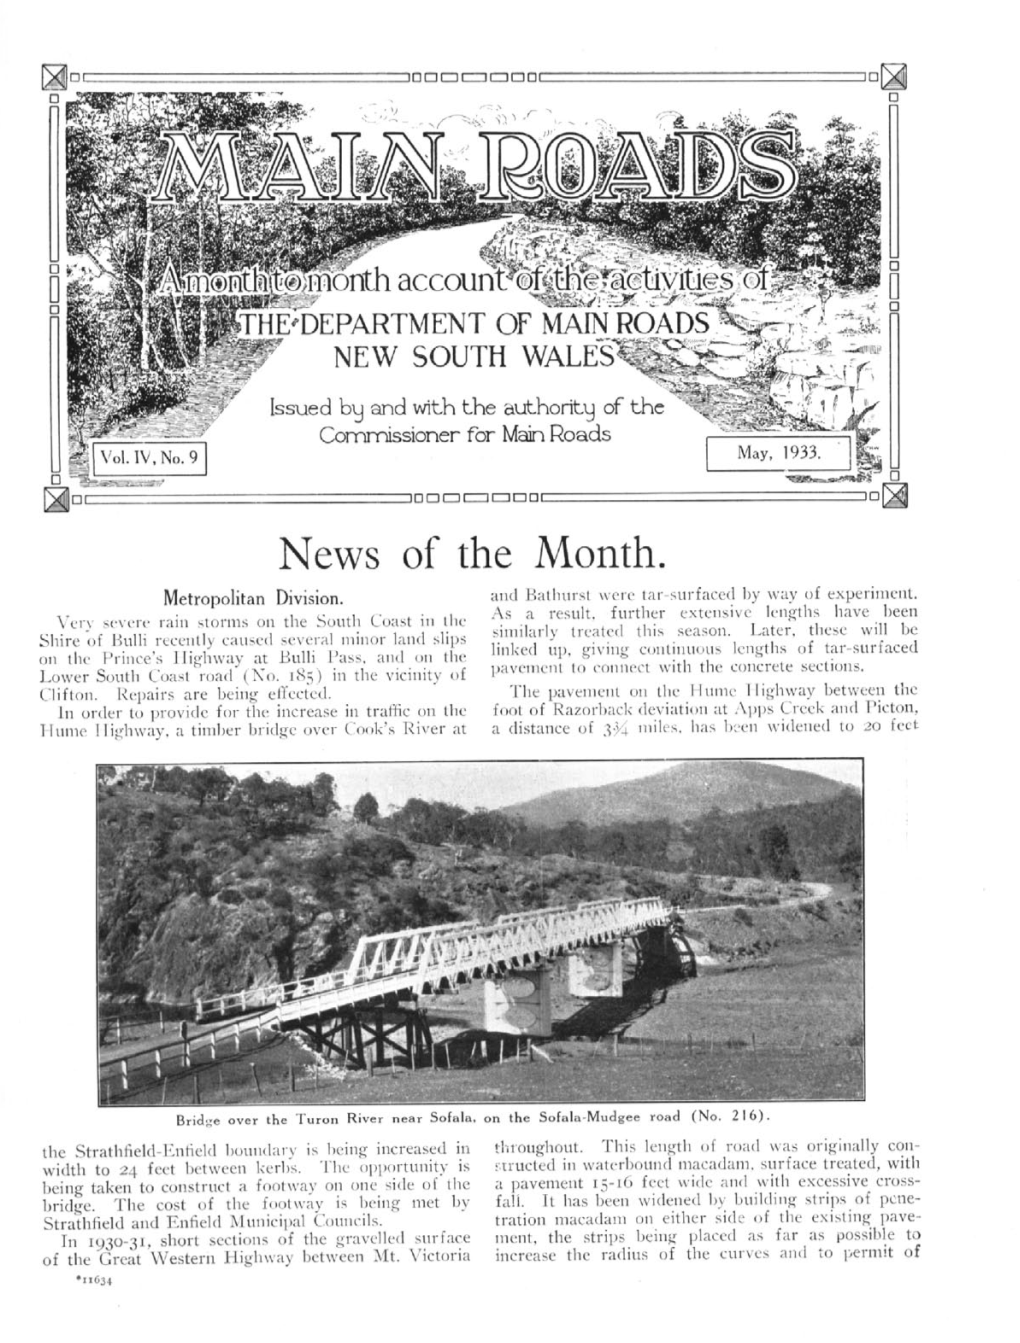 May 1933, Volume 4, No. 9